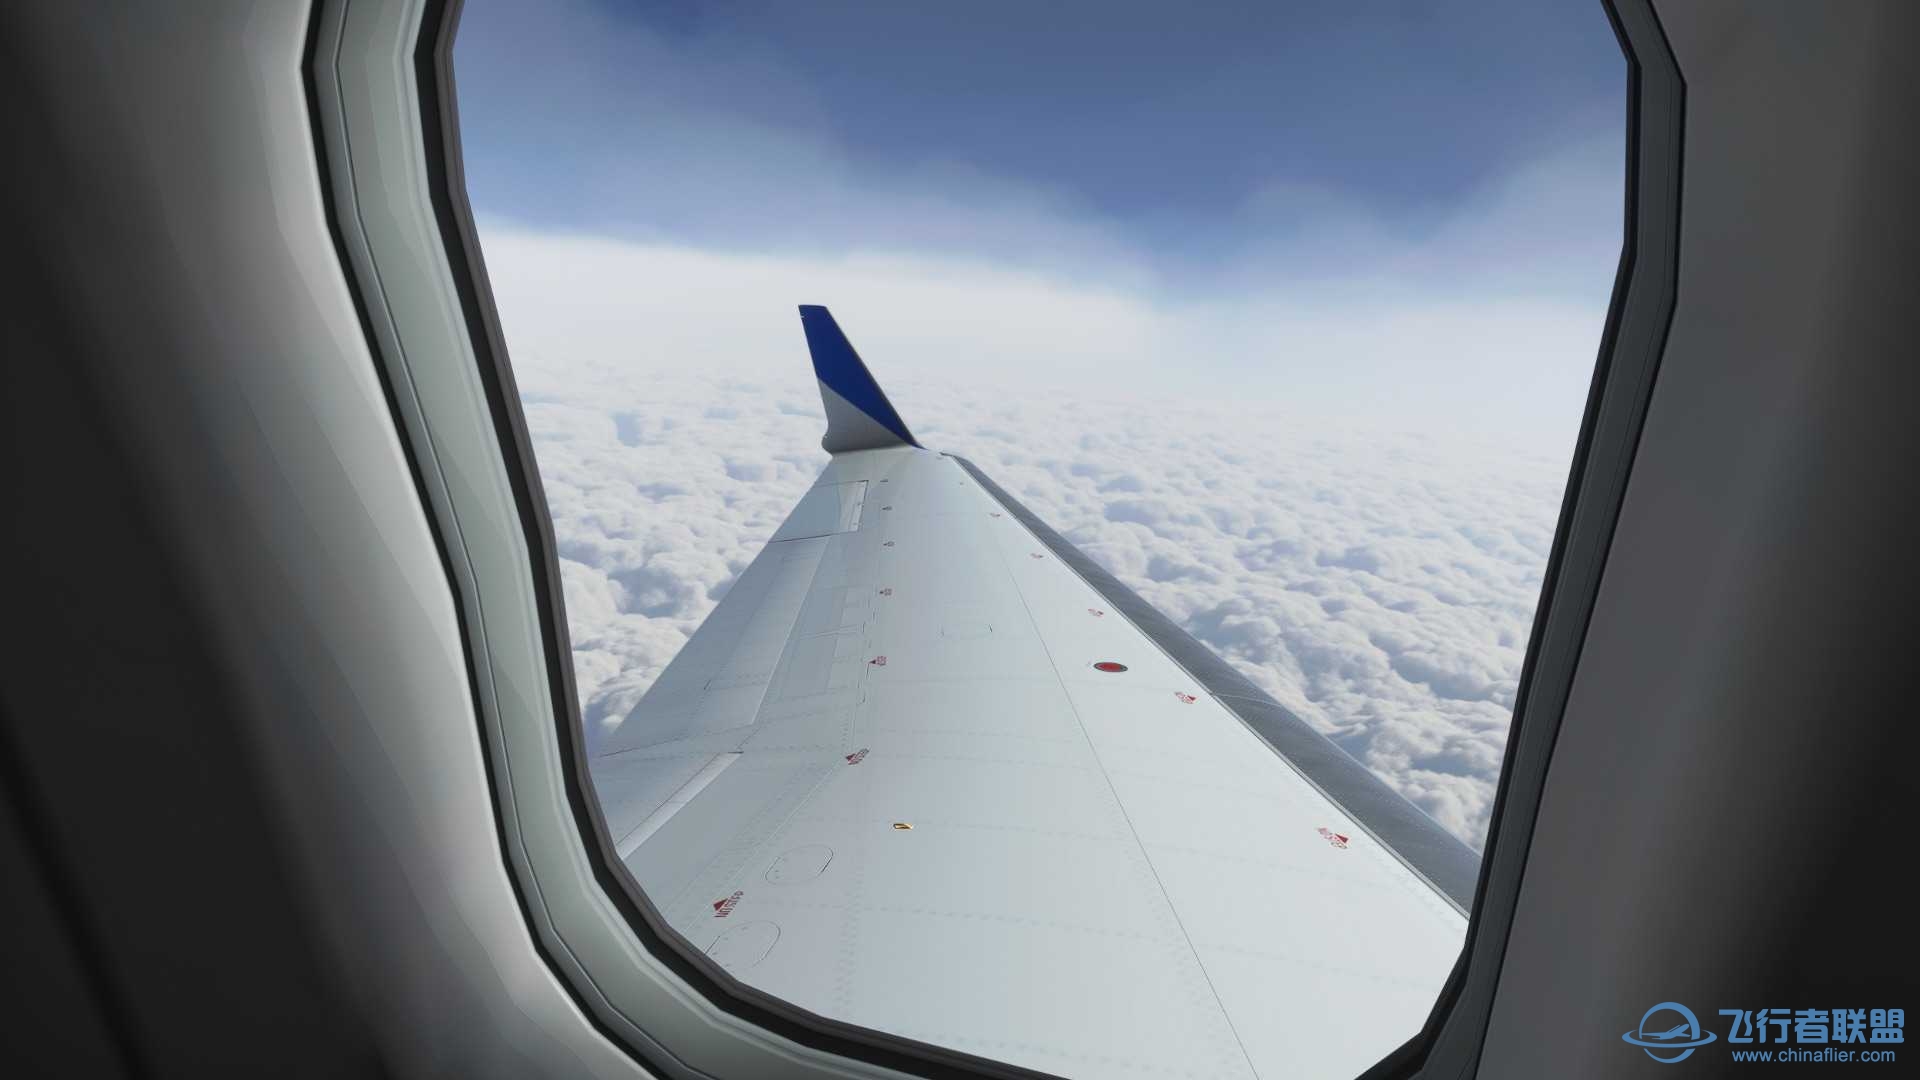 模拟飞行2020怎么调整到客舱视角啊？-6954 